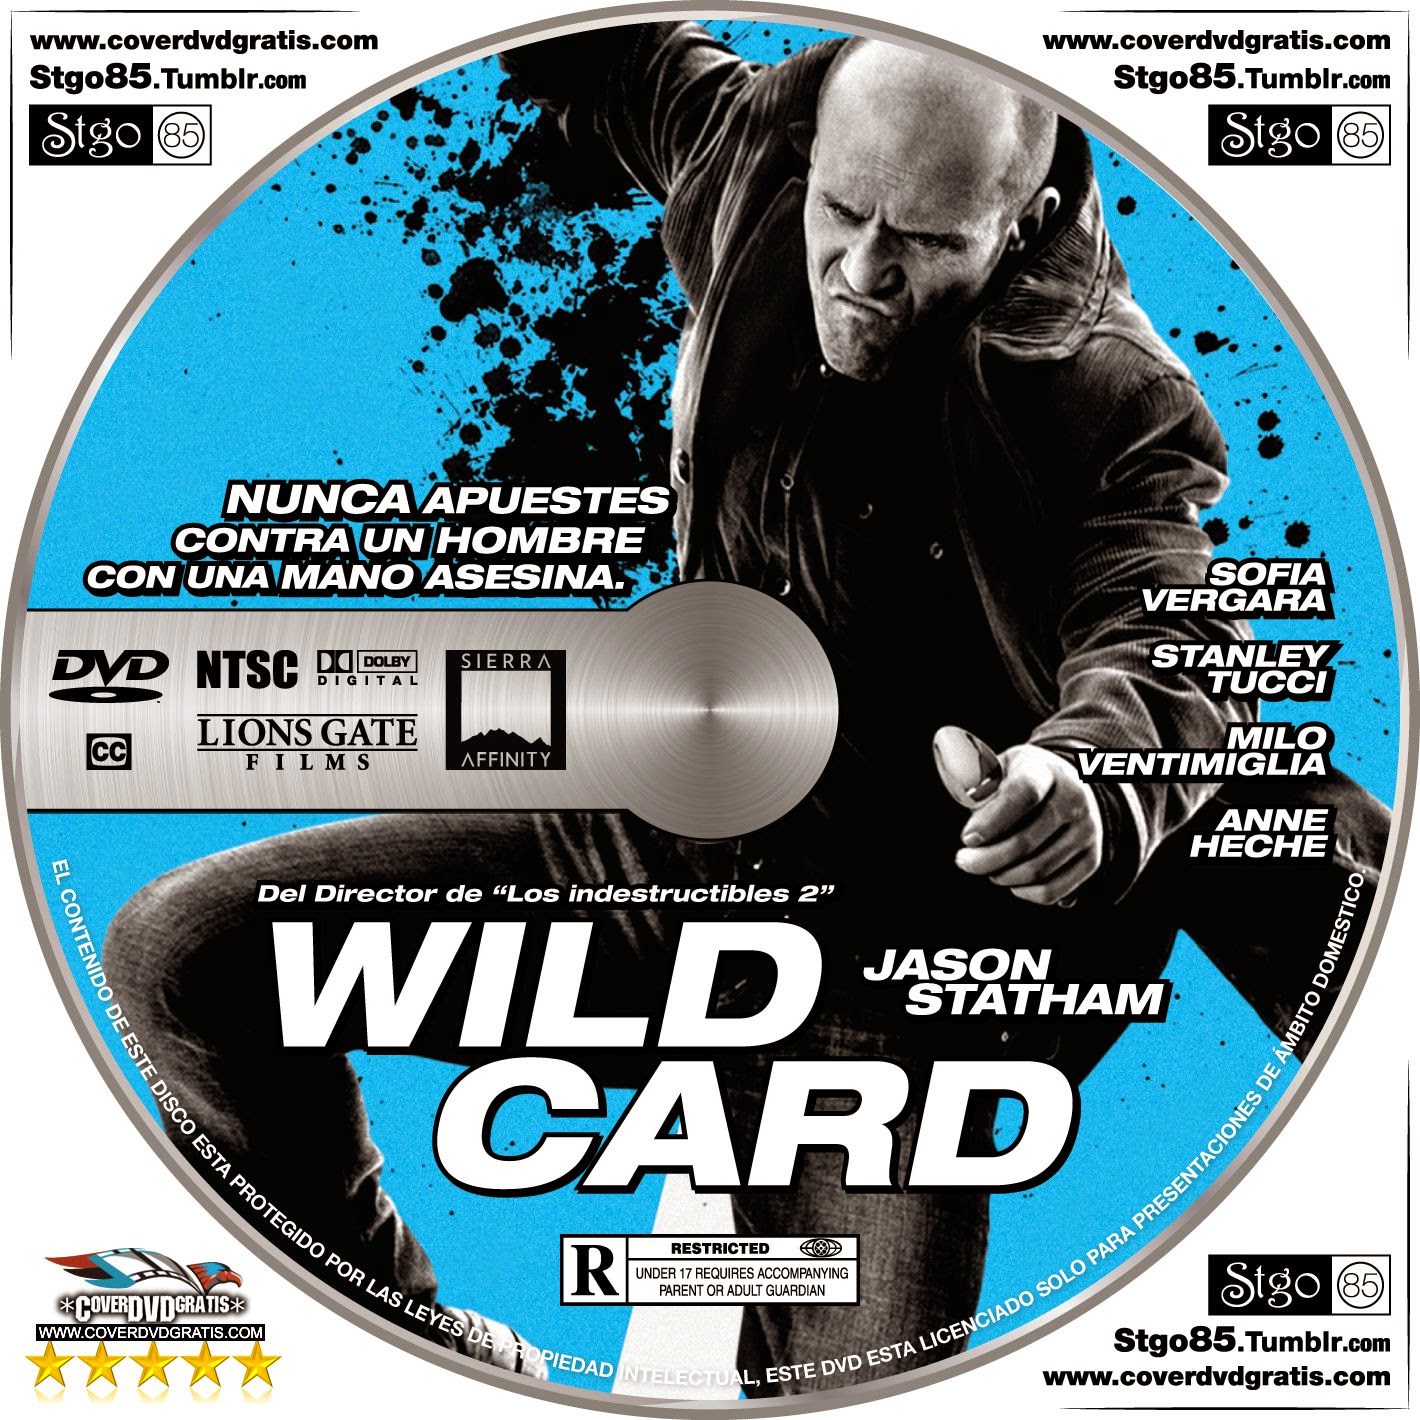 Wild Card 2014 DVD COVER - CoverDVDgratis